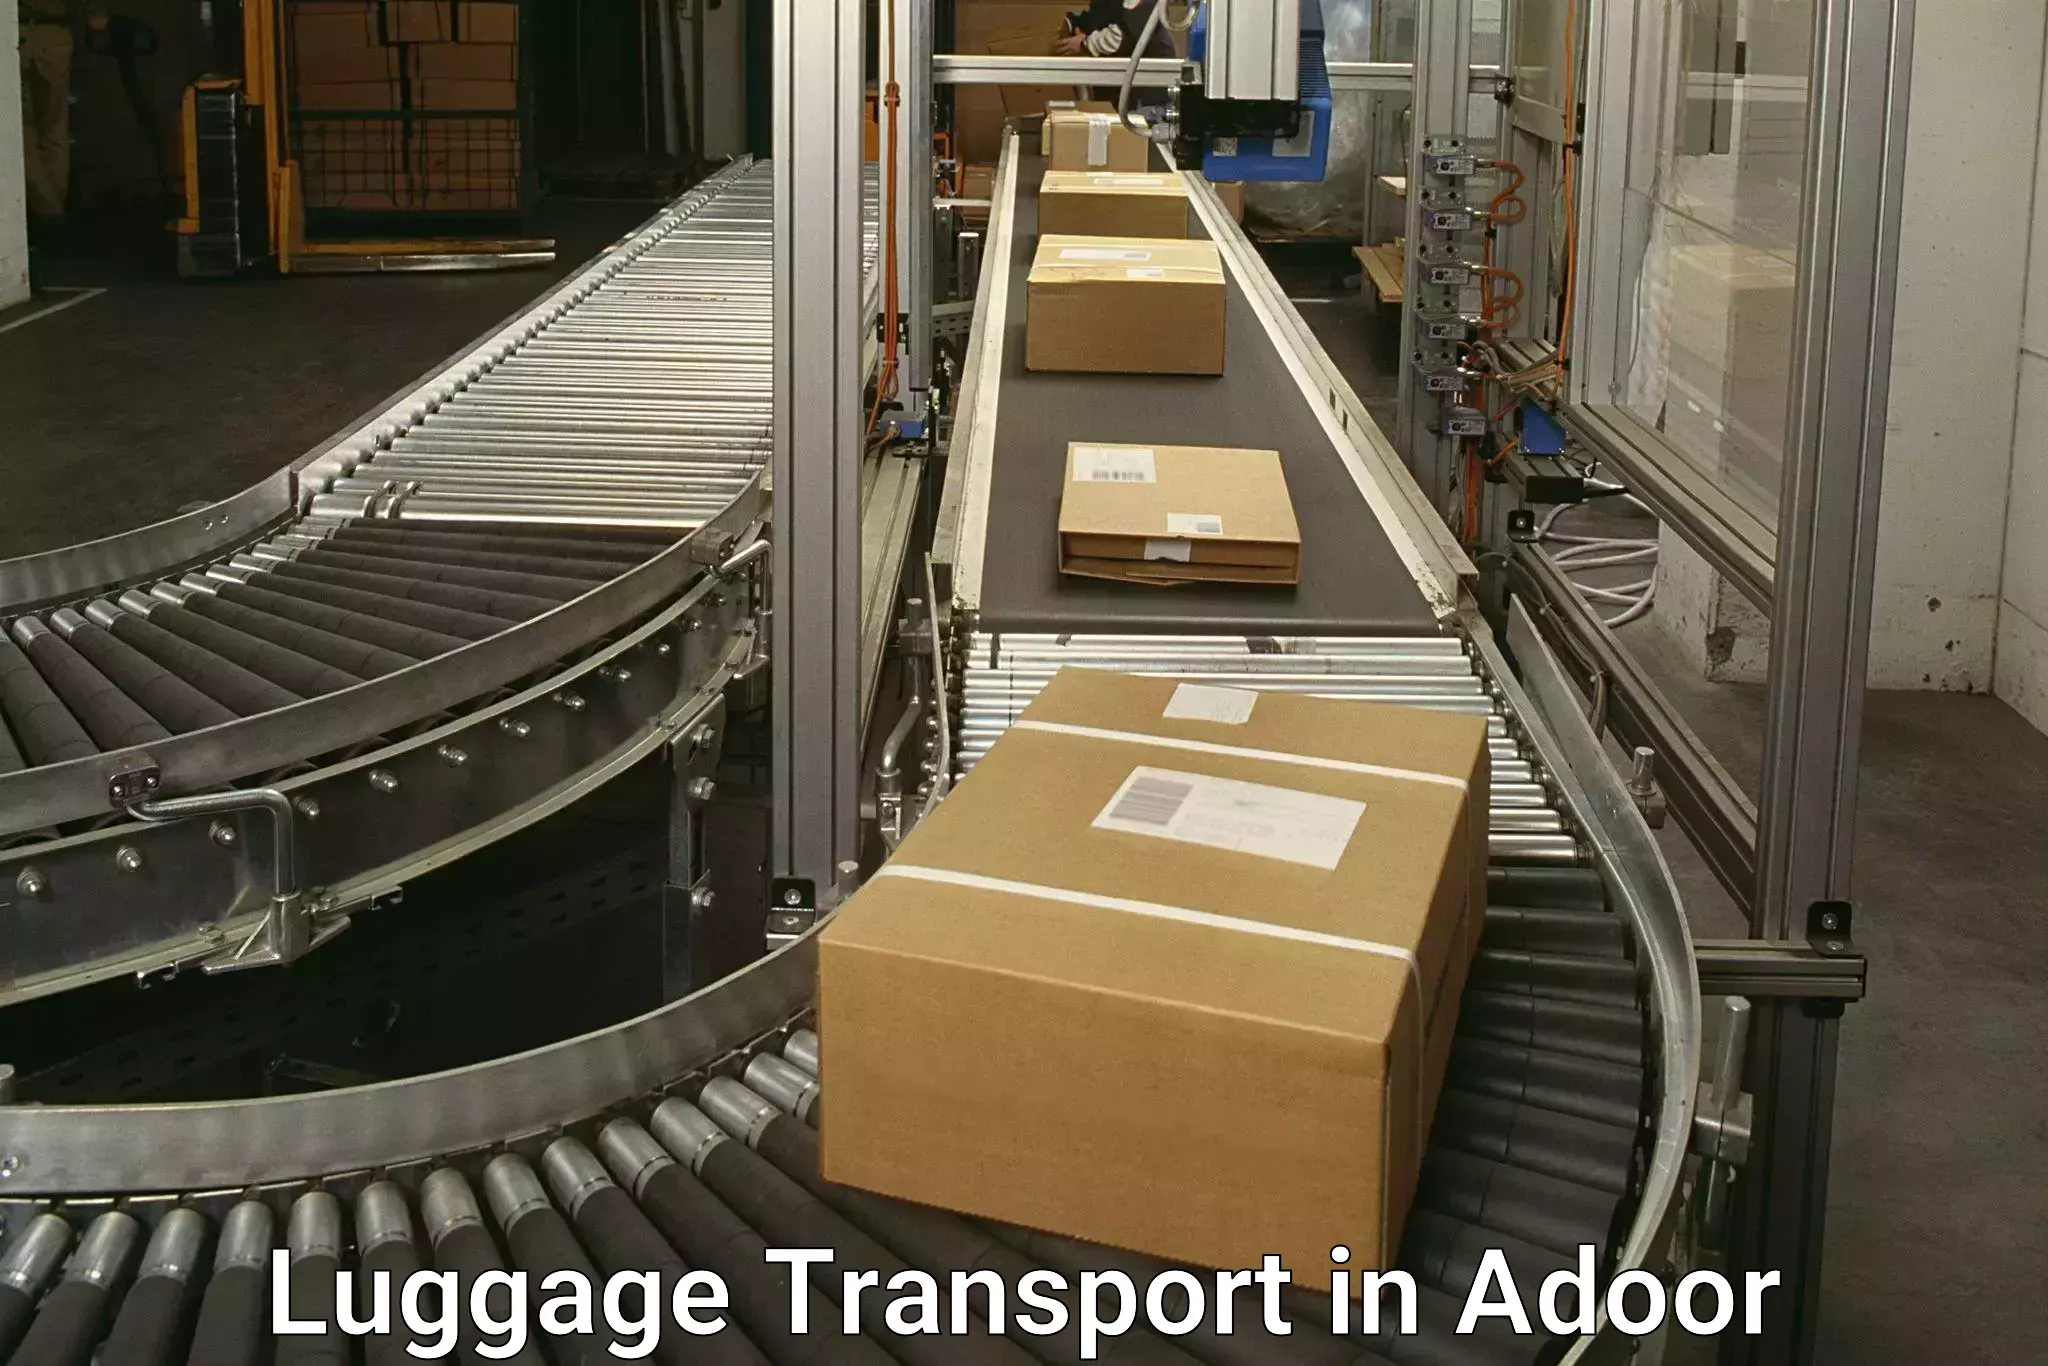 Baggage transport network in Adoor